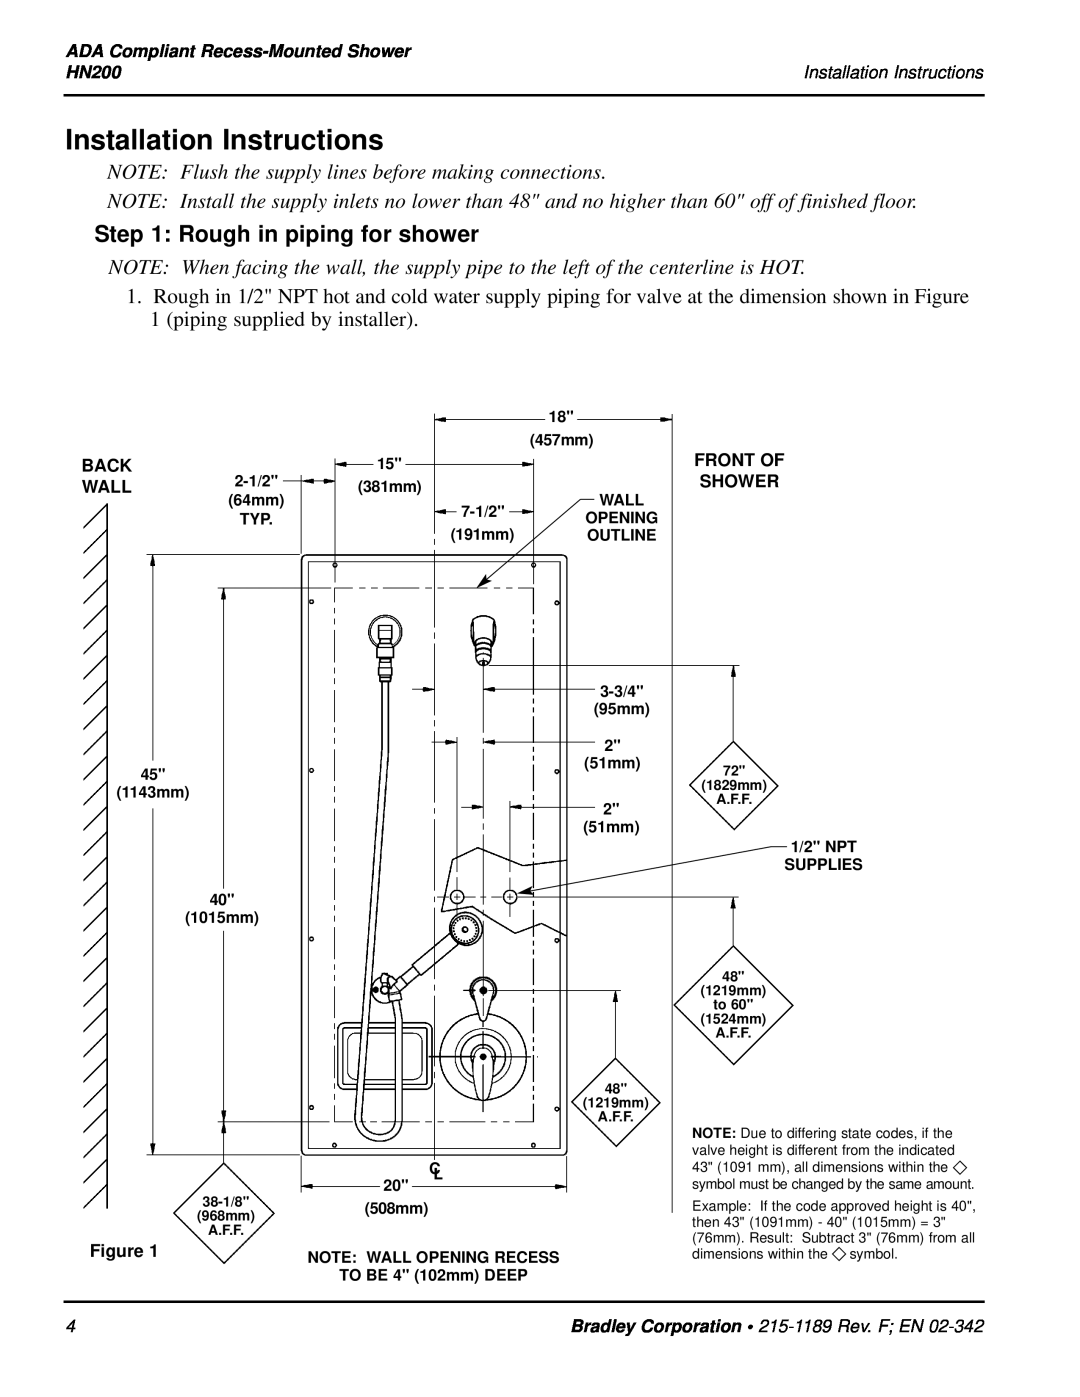 Bradley Smoker HN200 installation instructions Installation Instructions, Rough in piping for shower 